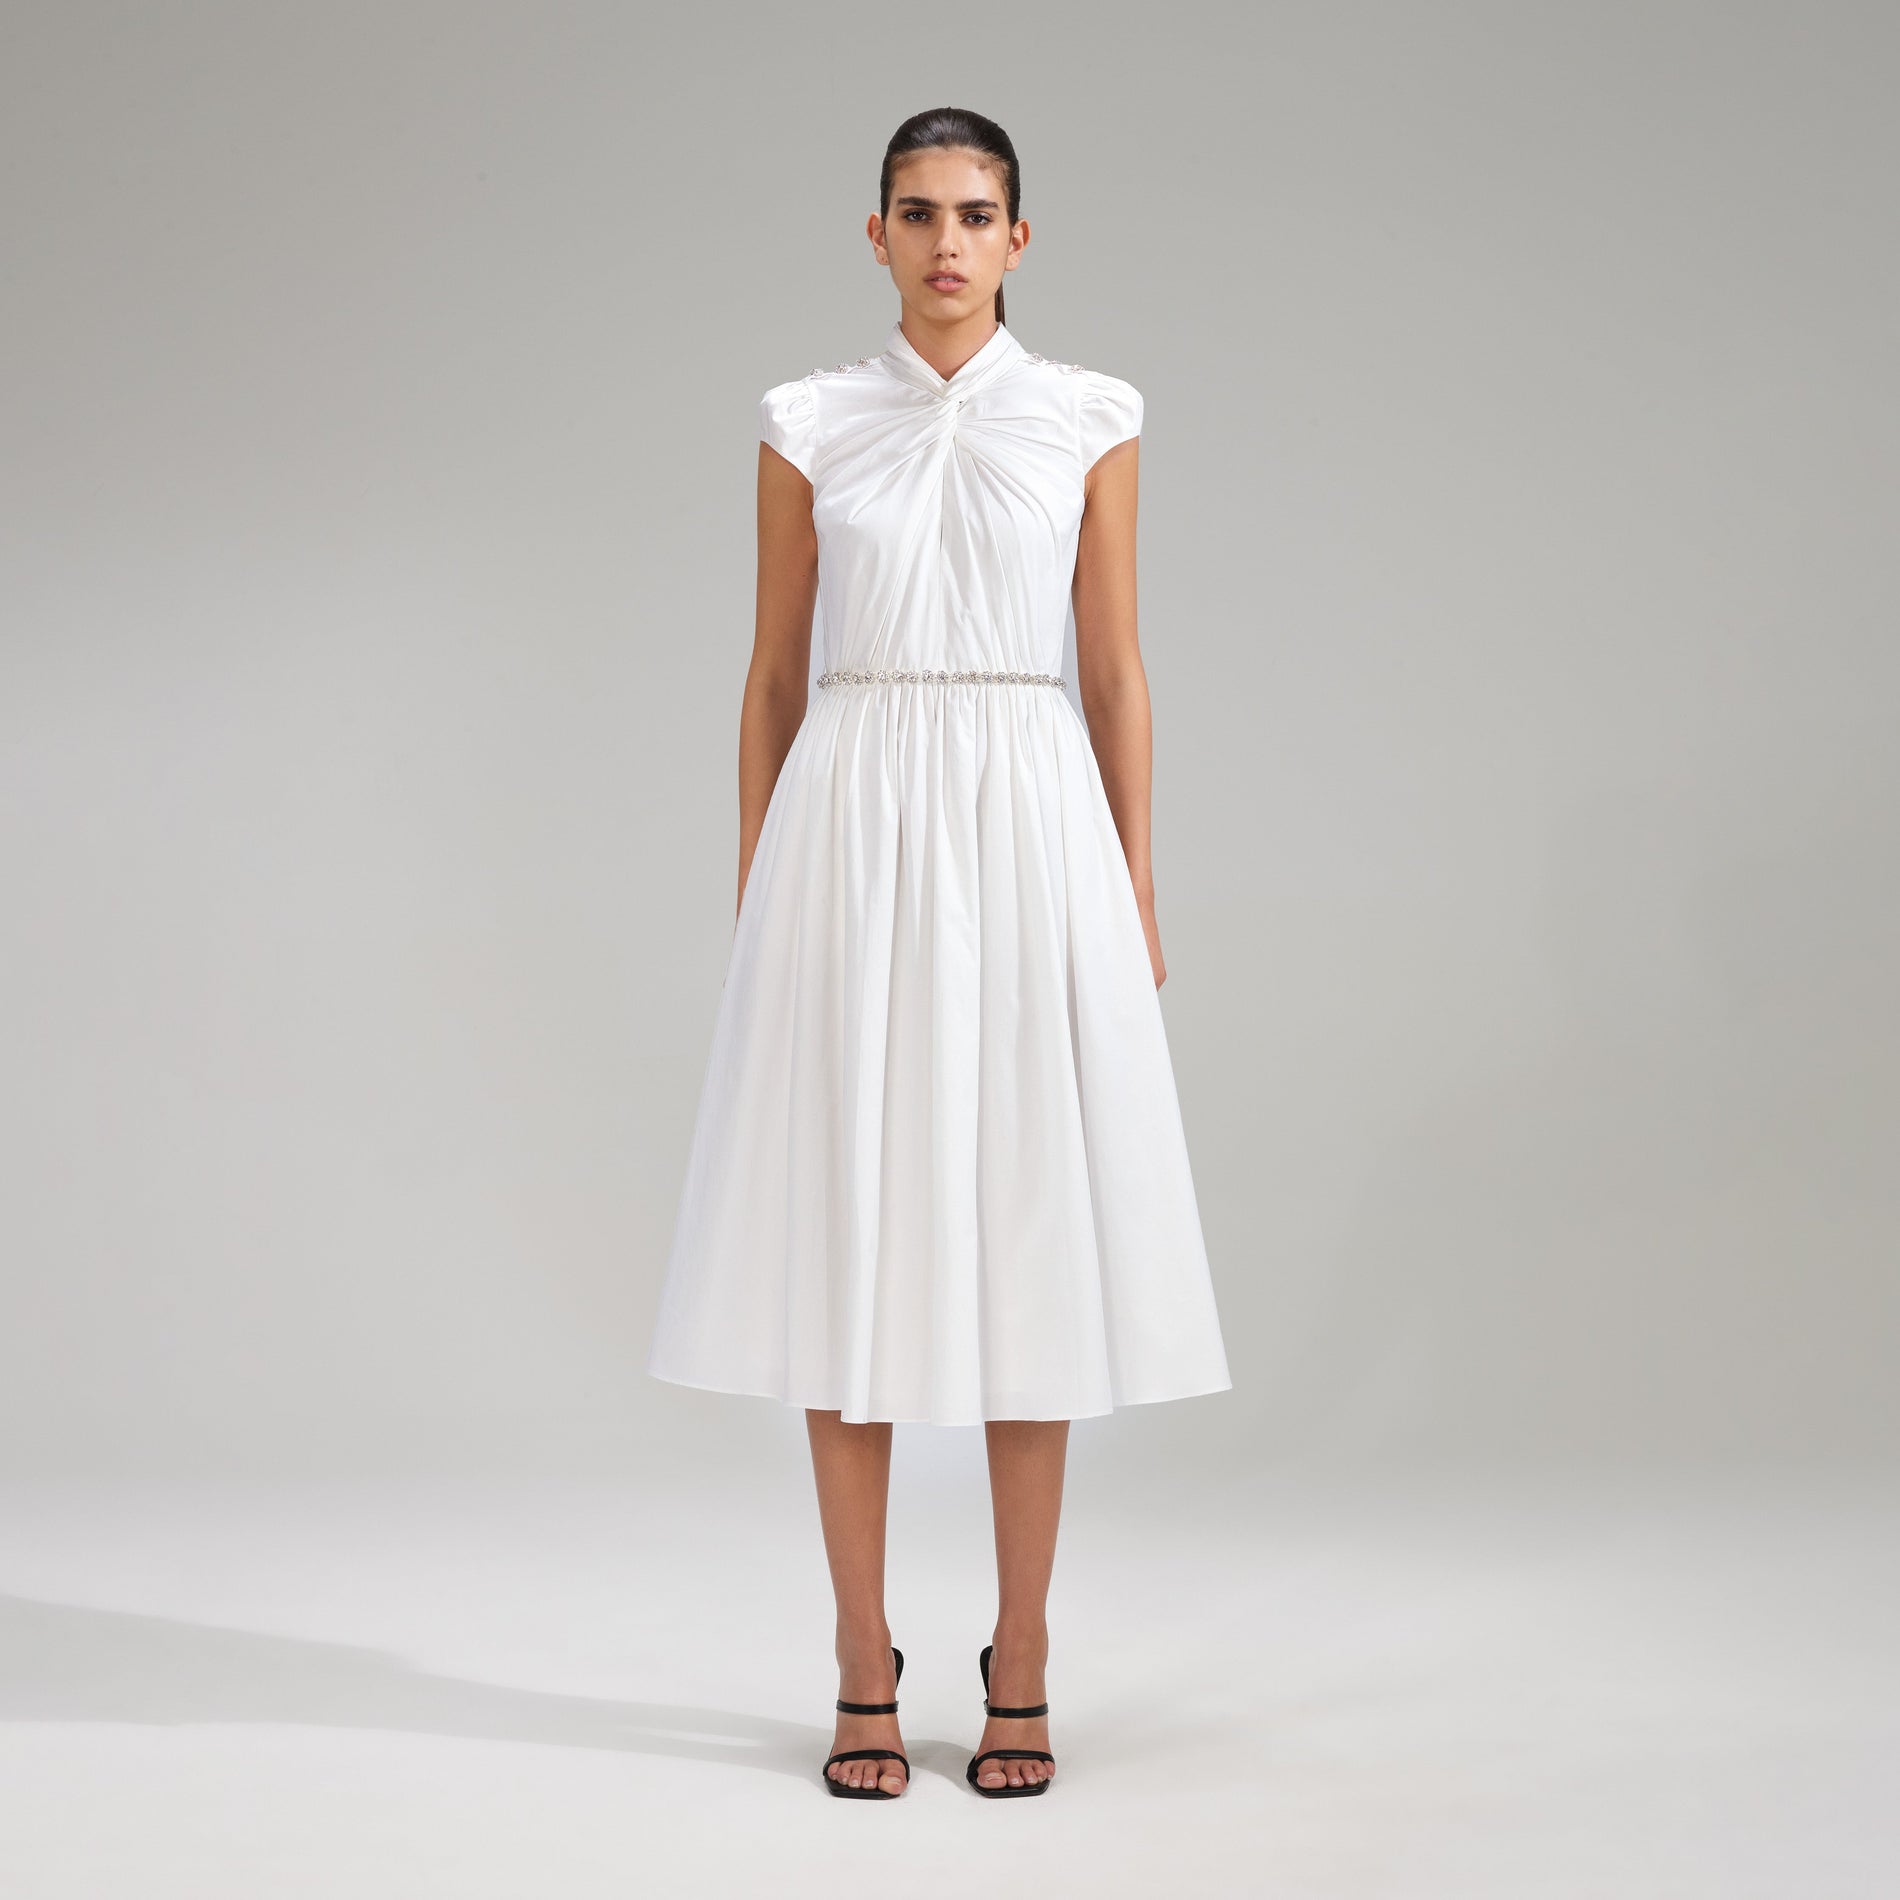 A woman wearing the White Cotton Midi Dress